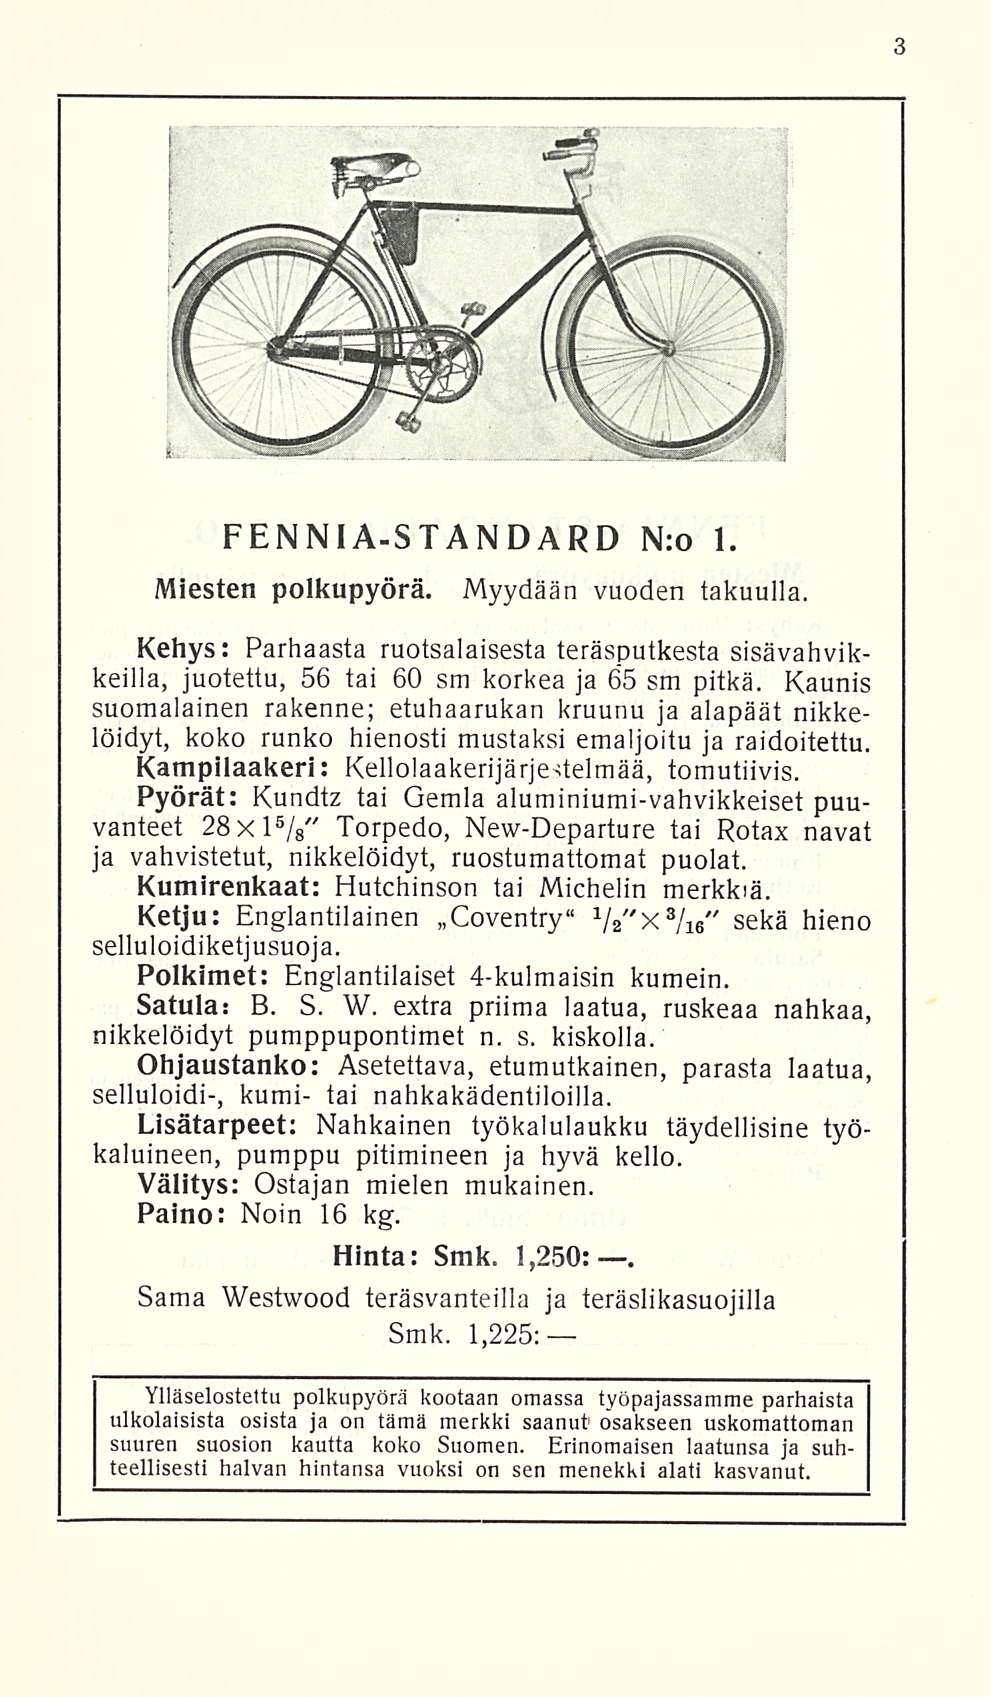 PENNIA-STANDARD N:o 1. Miesten polkupyörä. Myydään vuoden takuulla. Kehys: Parhaasta ruotsalaisesta teräsputkesta sisävahvikkeilla, juotettu, 56 tai 60 sm korkea ja 65 sm pitkä.